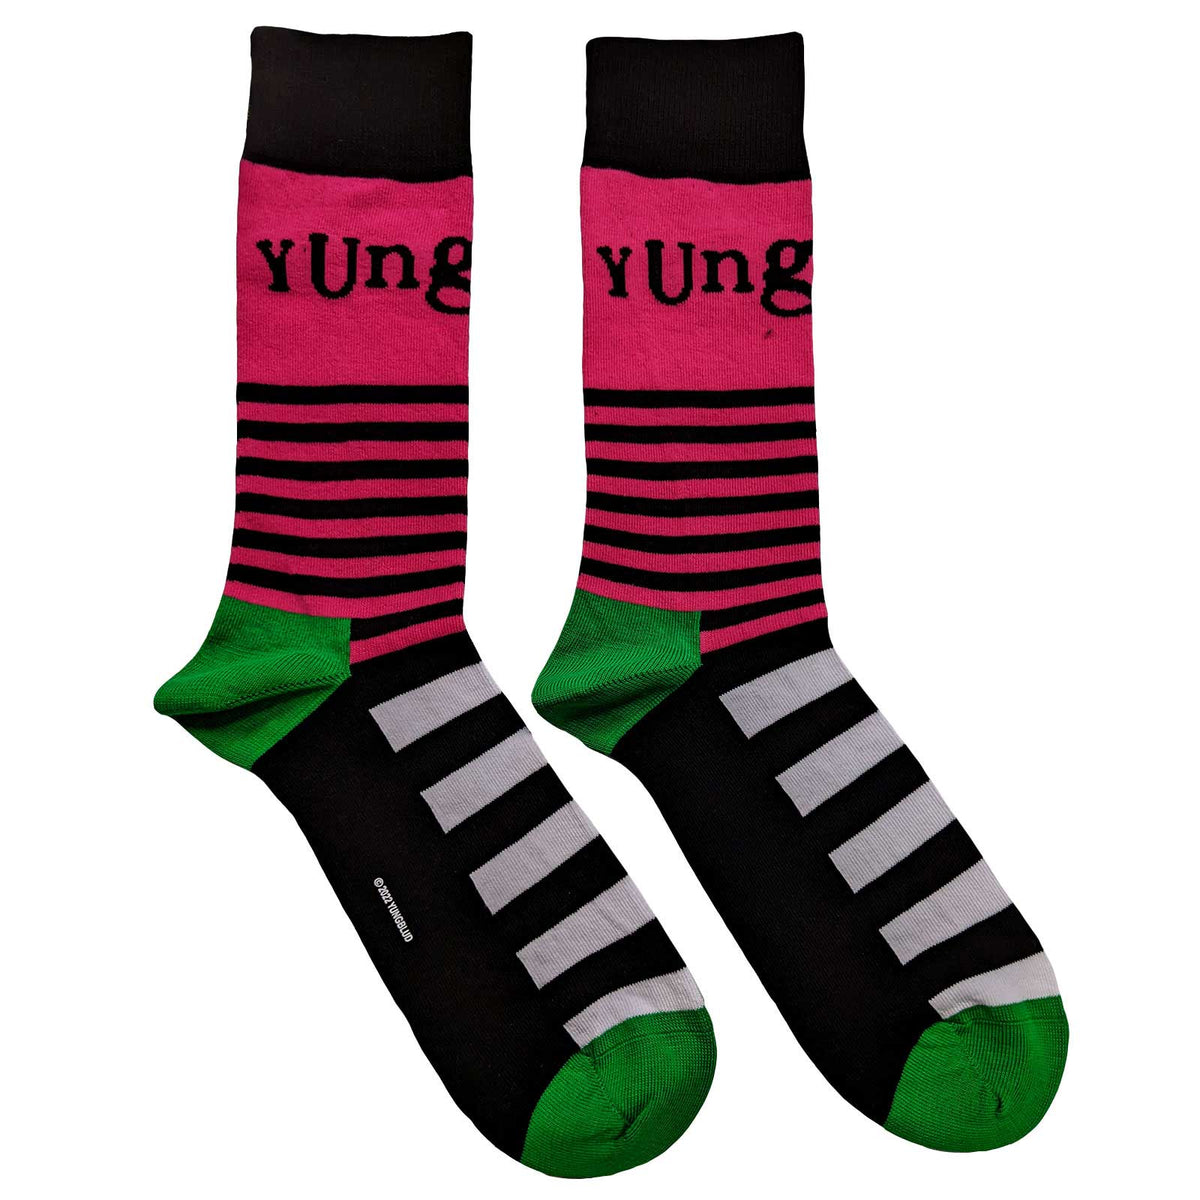 Yungblud Socks | Logo &amp; Stripes